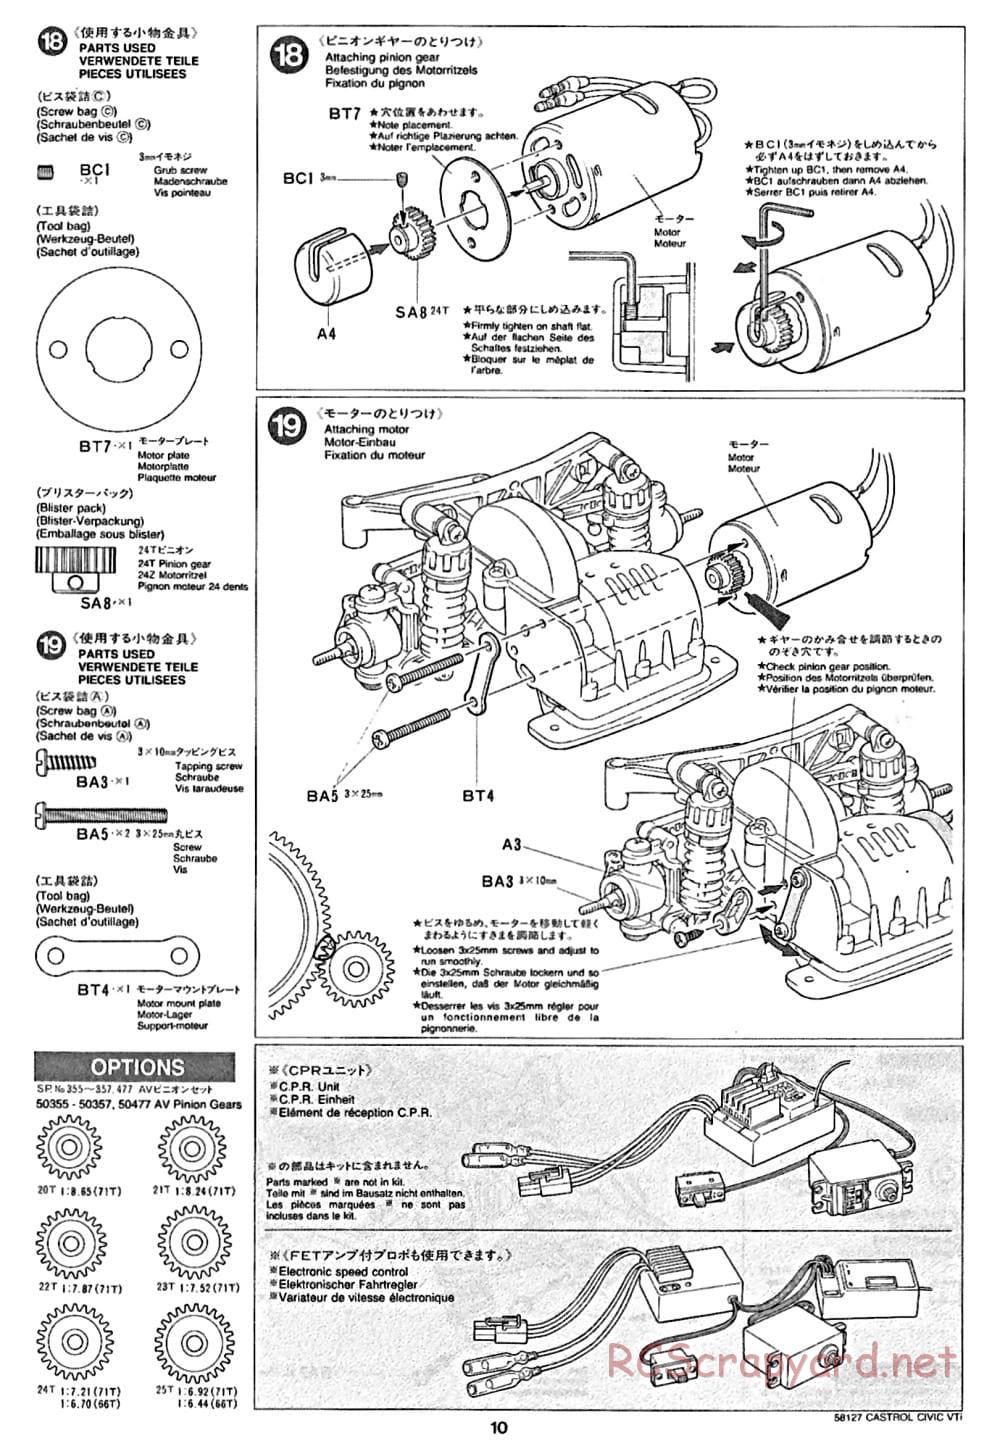 Tamiya - Castrol Honda Civic VTi - FF-01 Chassis - Manual - Page 10